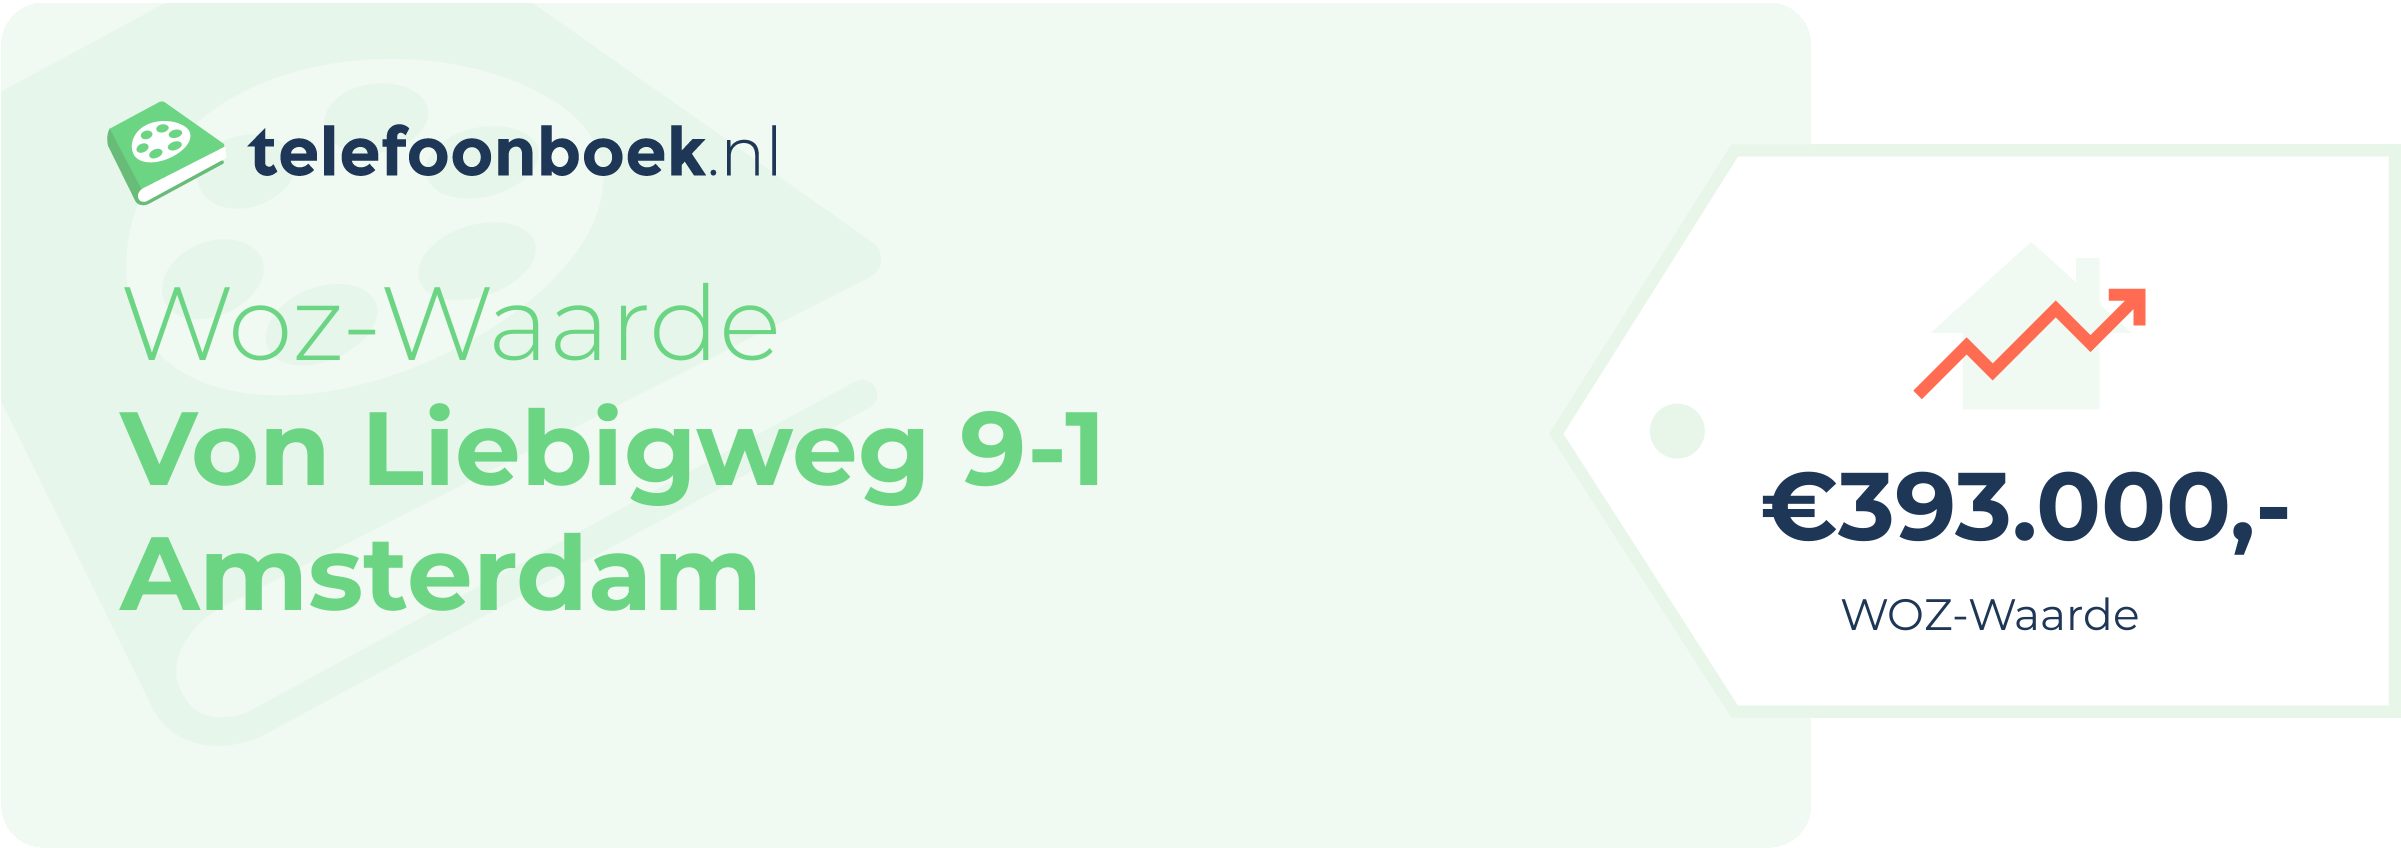 WOZ-waarde Von Liebigweg 9-1 Amsterdam